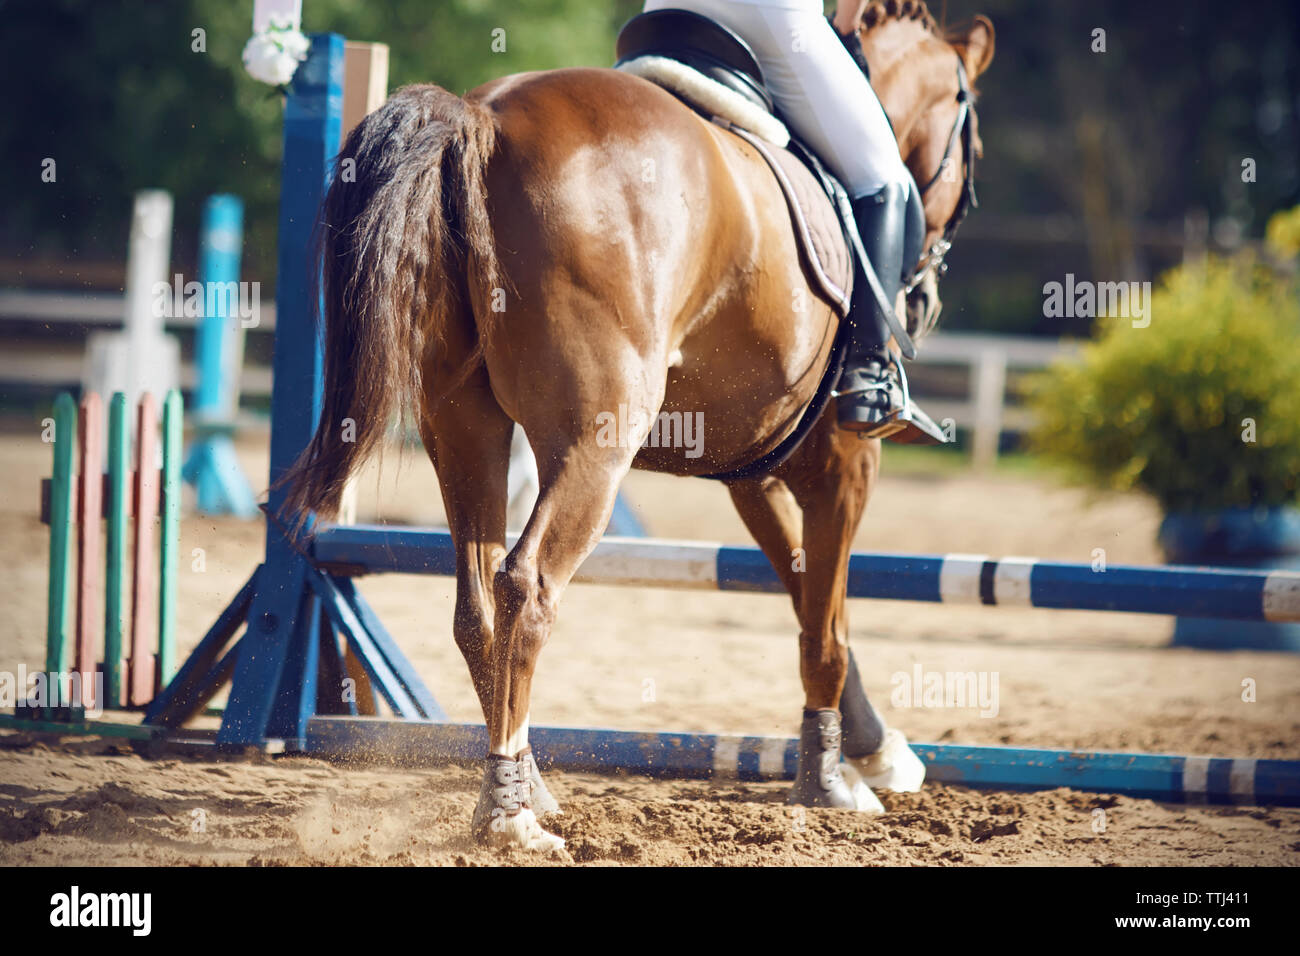 Reiter mit einem Pferd die Teilnahme an einem sportlichen Wettkampf - springen und gehen über den blauen Barrieren zu springen, ein Blick aus dem Hintergrund. Stockfoto